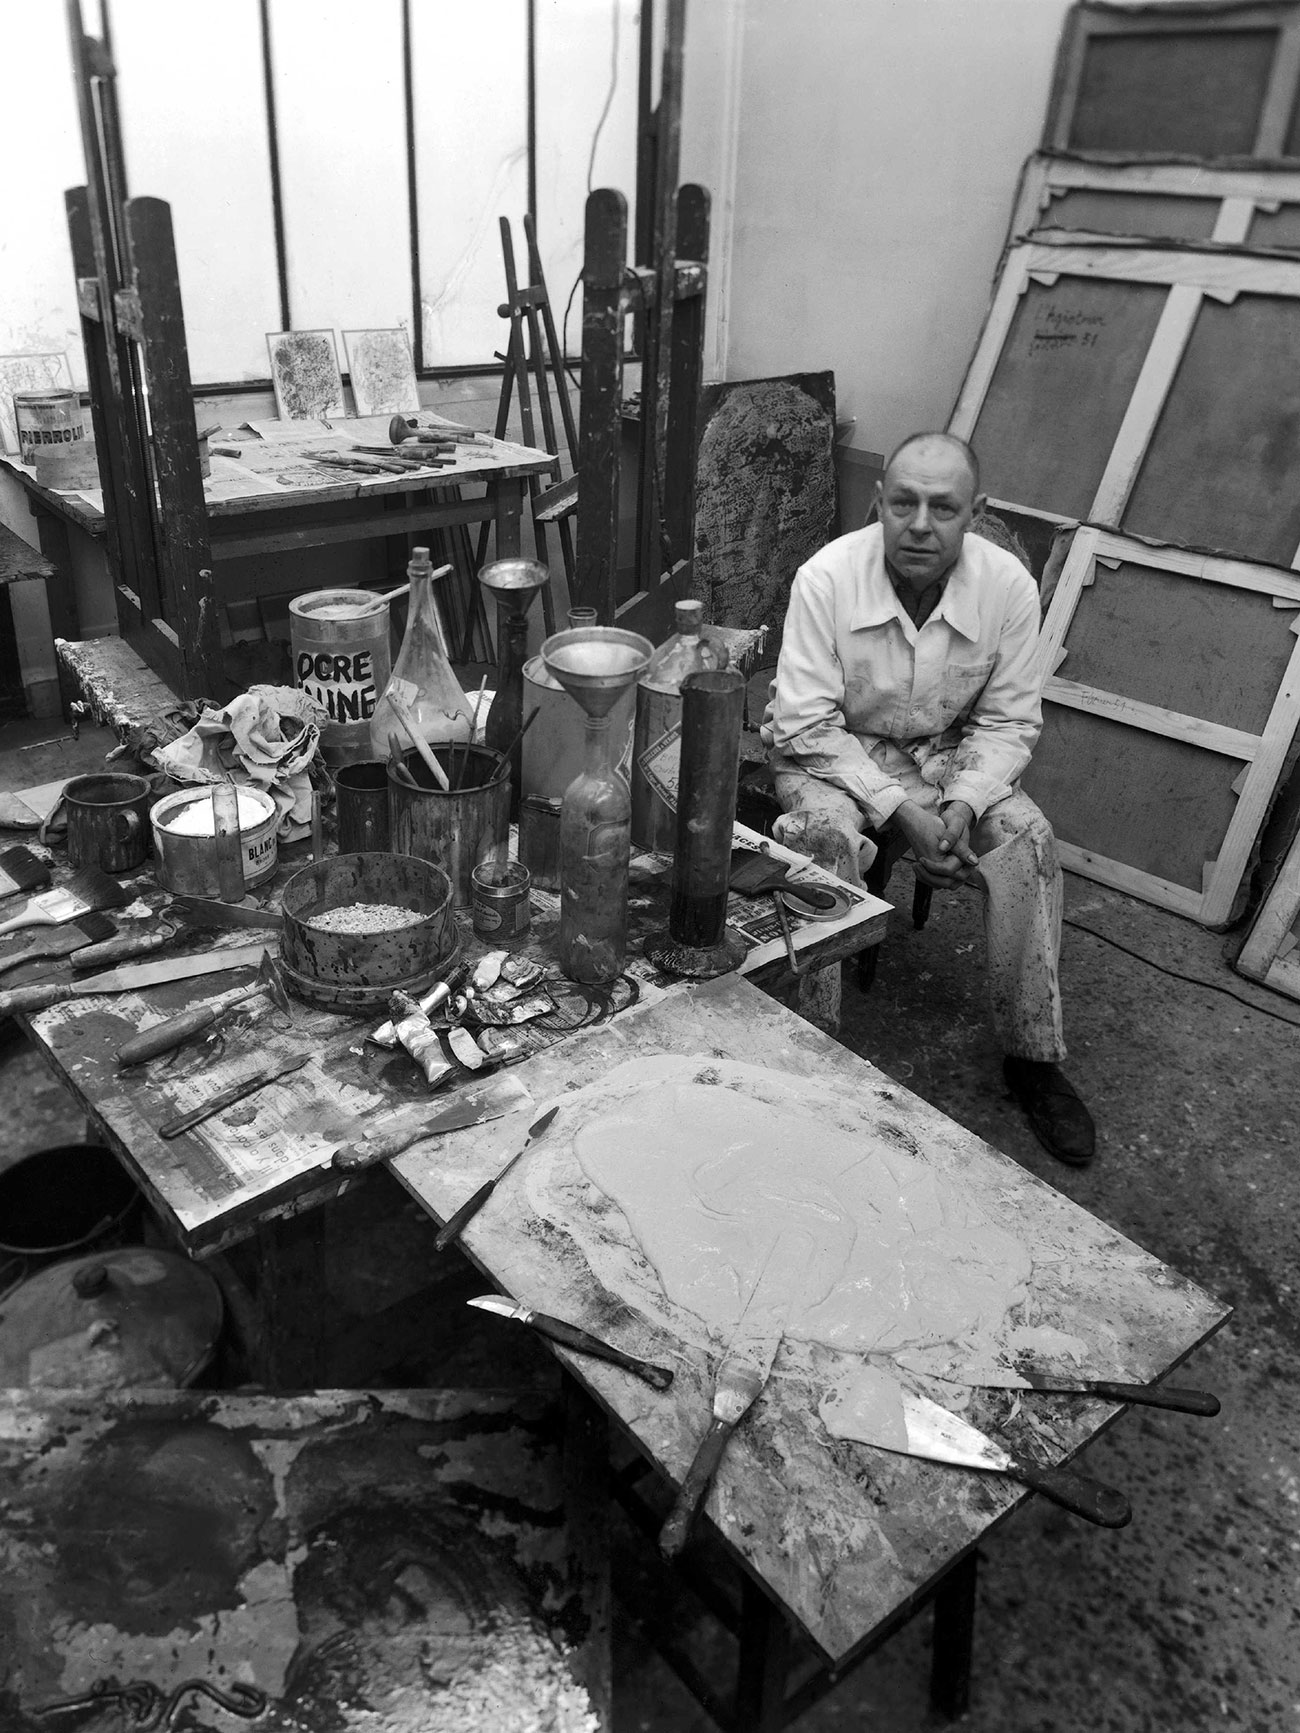 Robert Doisneau, Jean Dubuffet dans son atelier, 1951, Collection Agence Gamma-Rapho © Robert Doisneau/GAMMA RAPHO